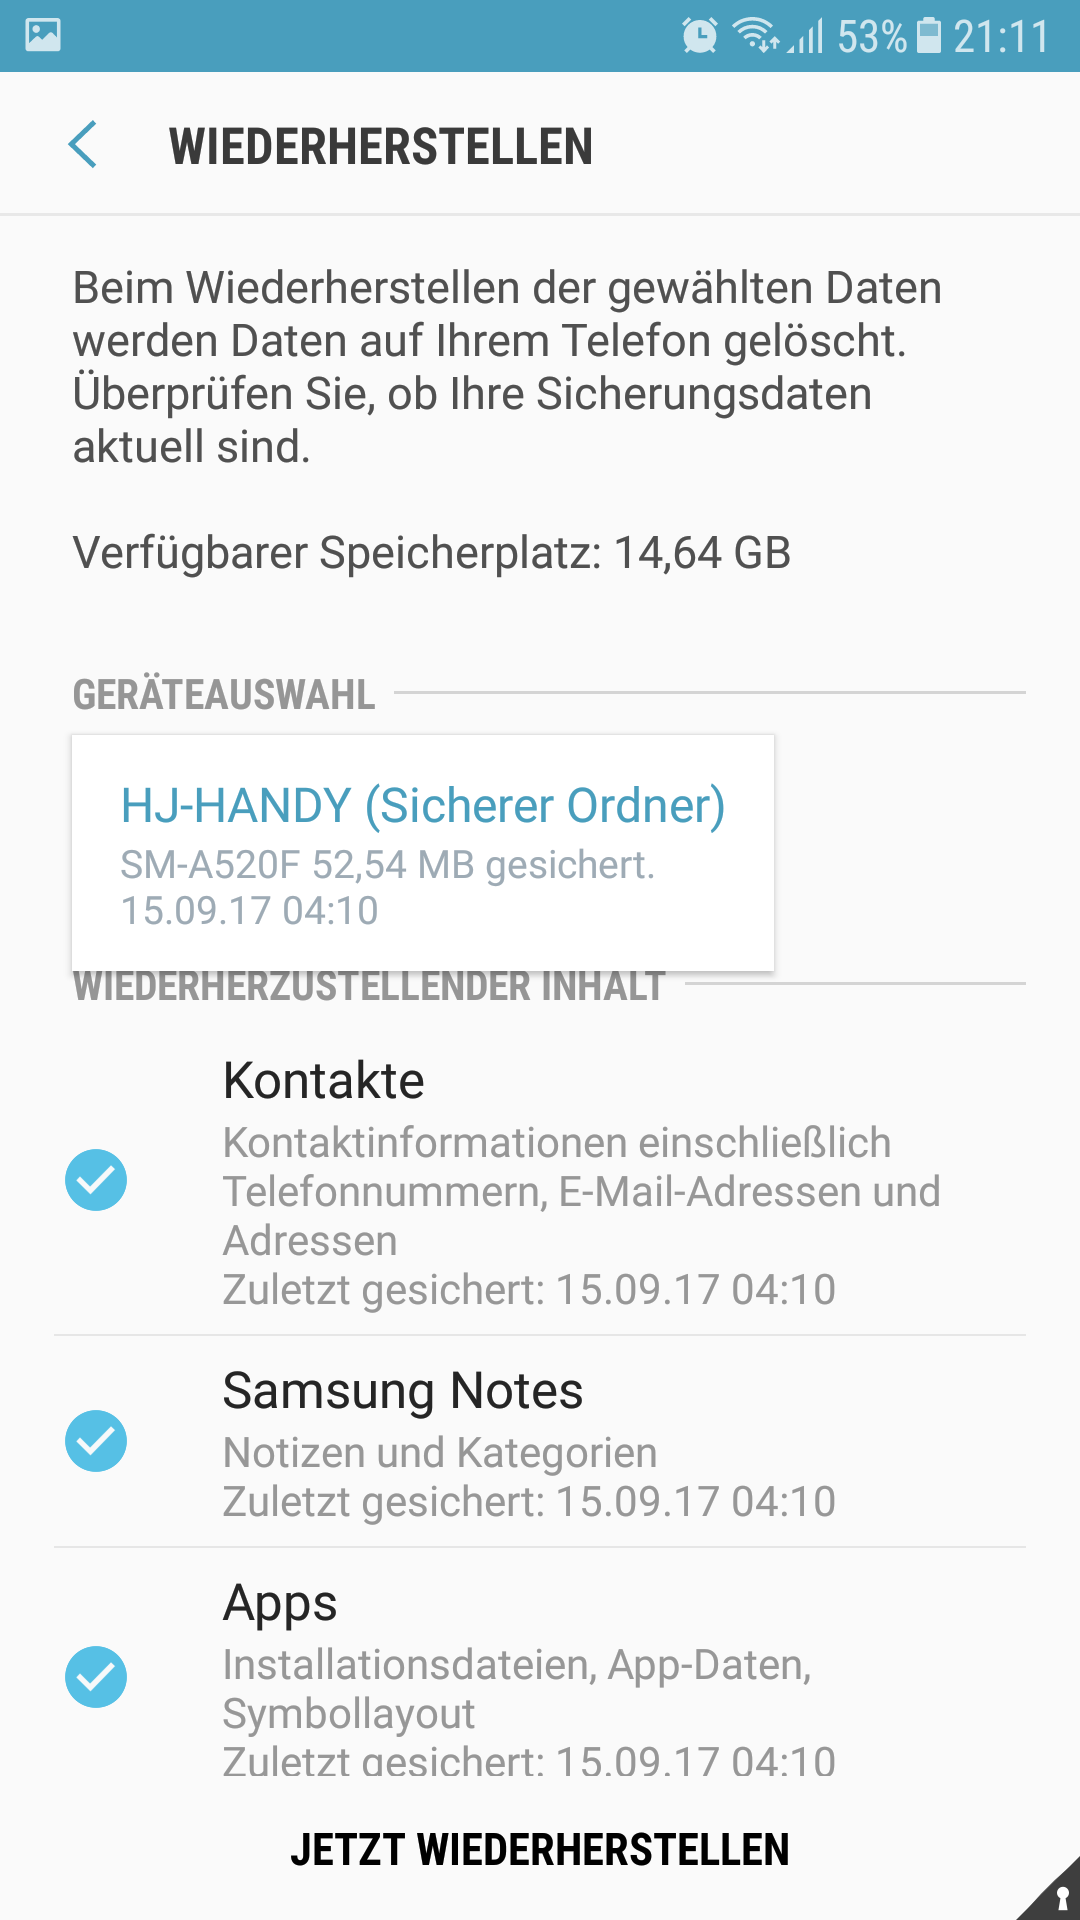 Samsung A5 Bilder im sicheren Ordner nach Gerätetausch trotz Datensicherung  nicht wiederherstellbar - Samsung Community